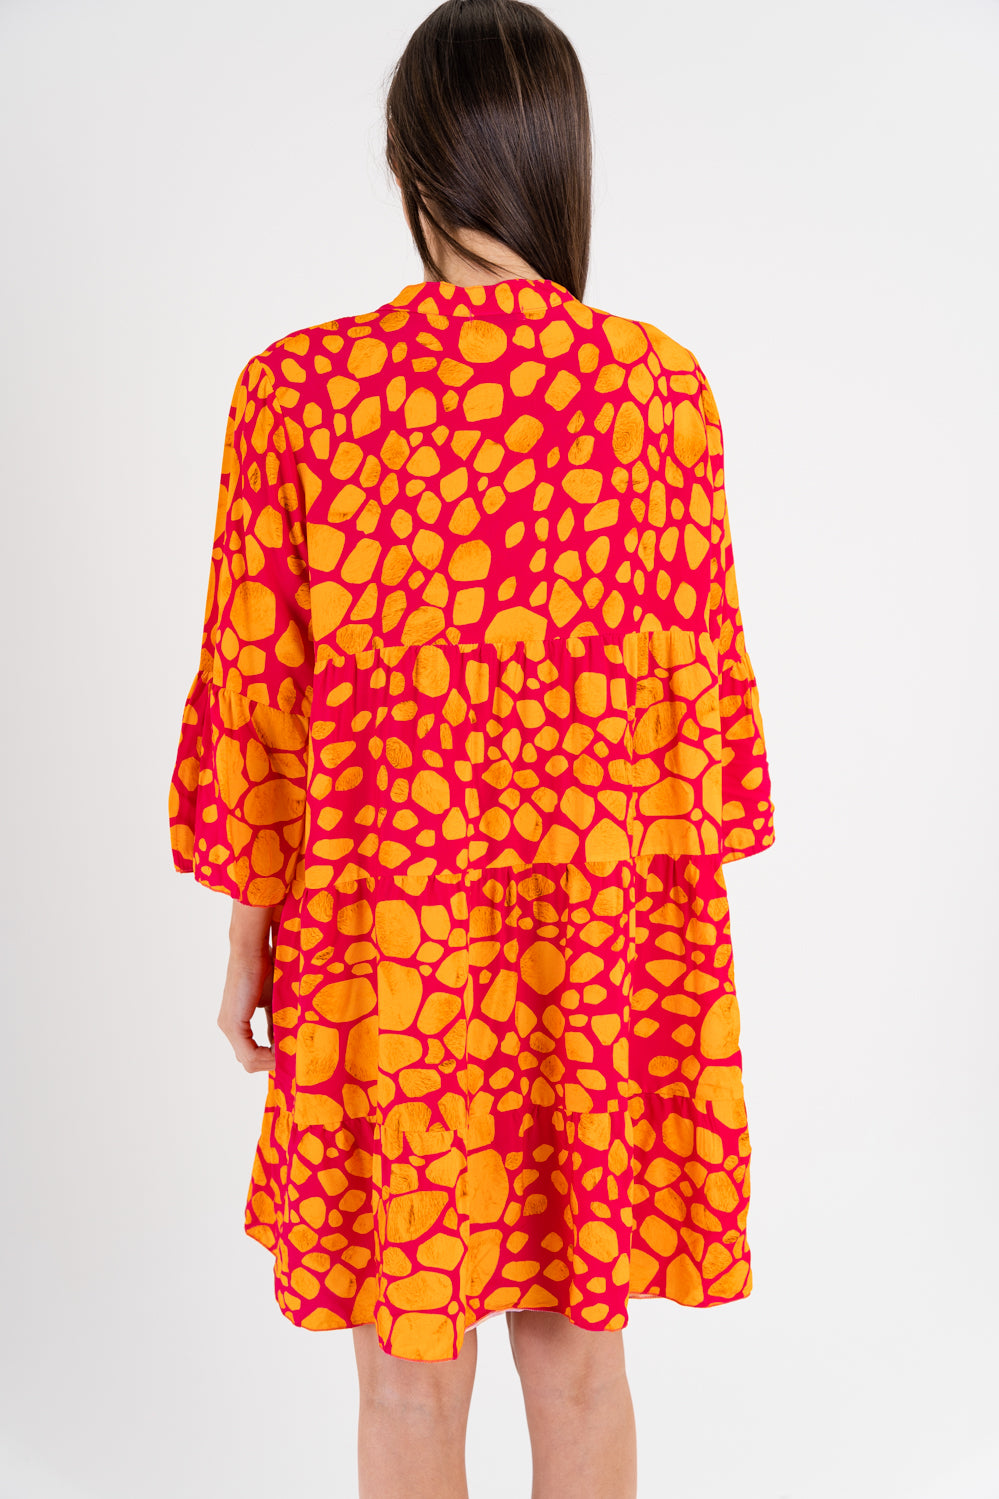 Abstract Dot Print Dress - Paris Paris